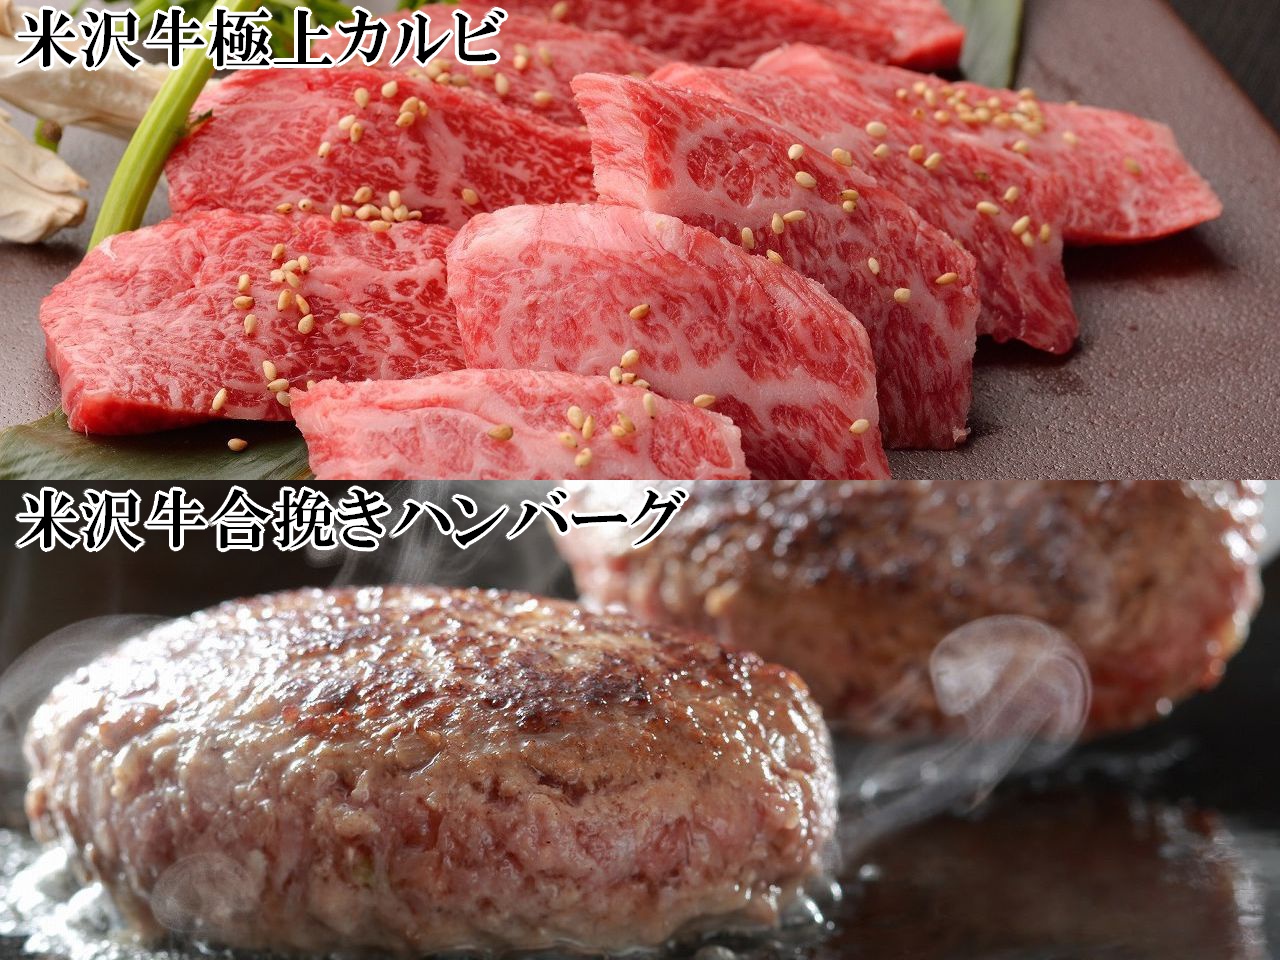 米沢牛赤身カルビ(300g)と米沢牛入り合挽ハンバーグ(150g/3個)のアソート画像